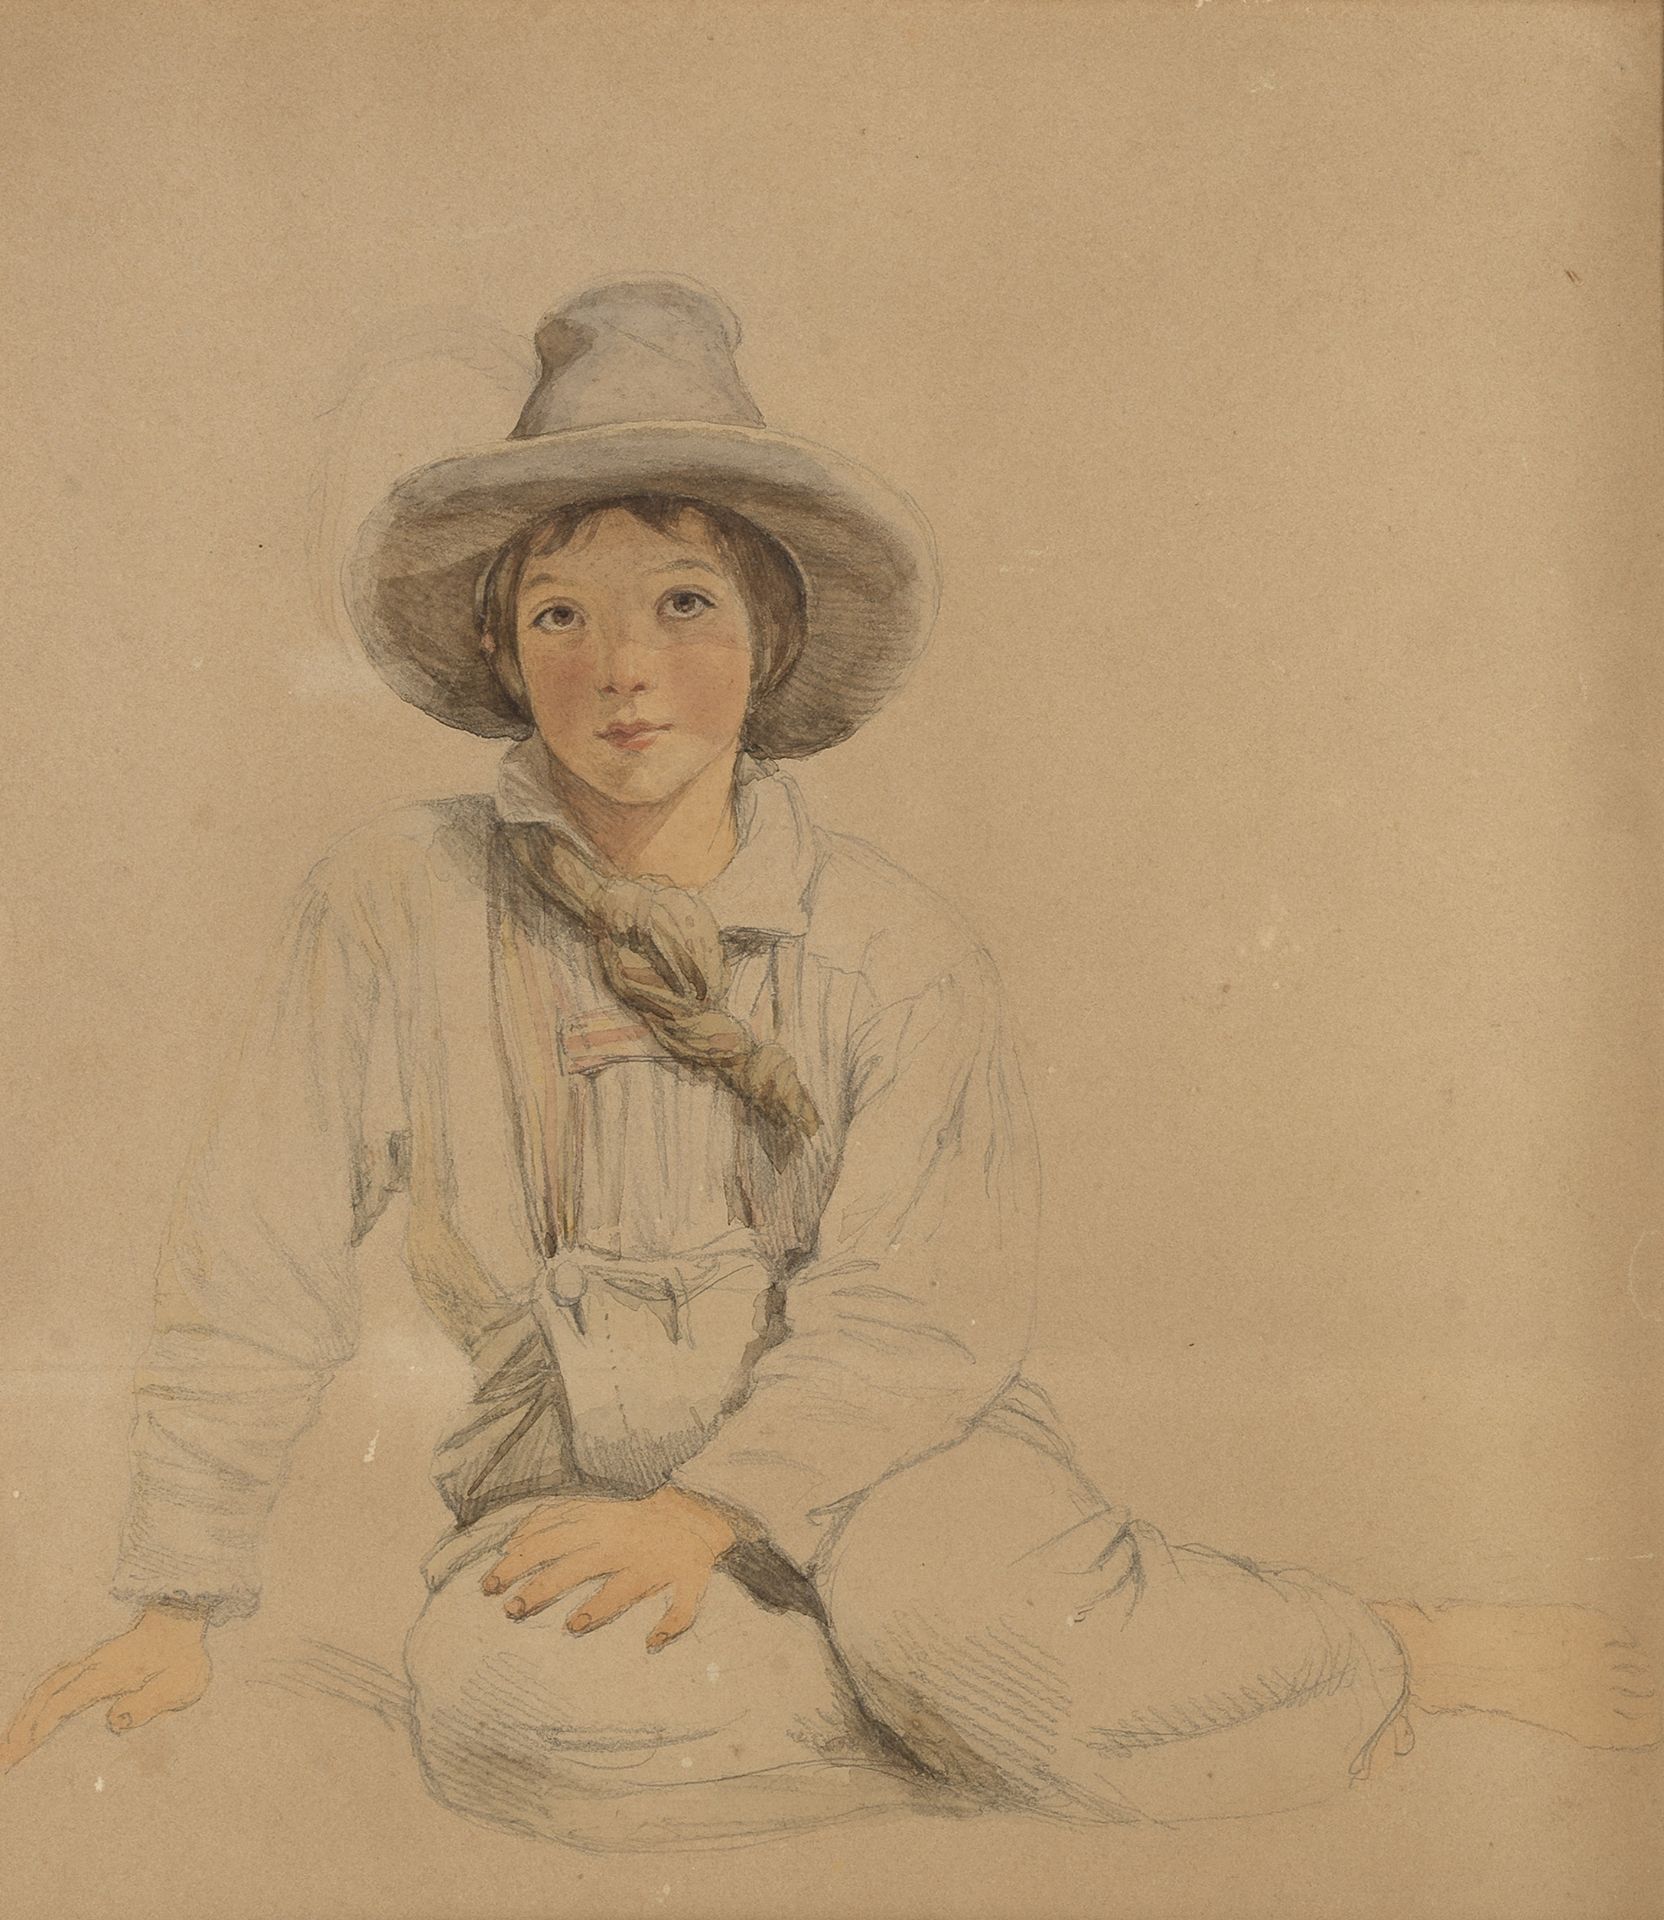 Sir Frederic William Burton, RHA FSA (Irish, 1816-1900) Portrait of a young boy